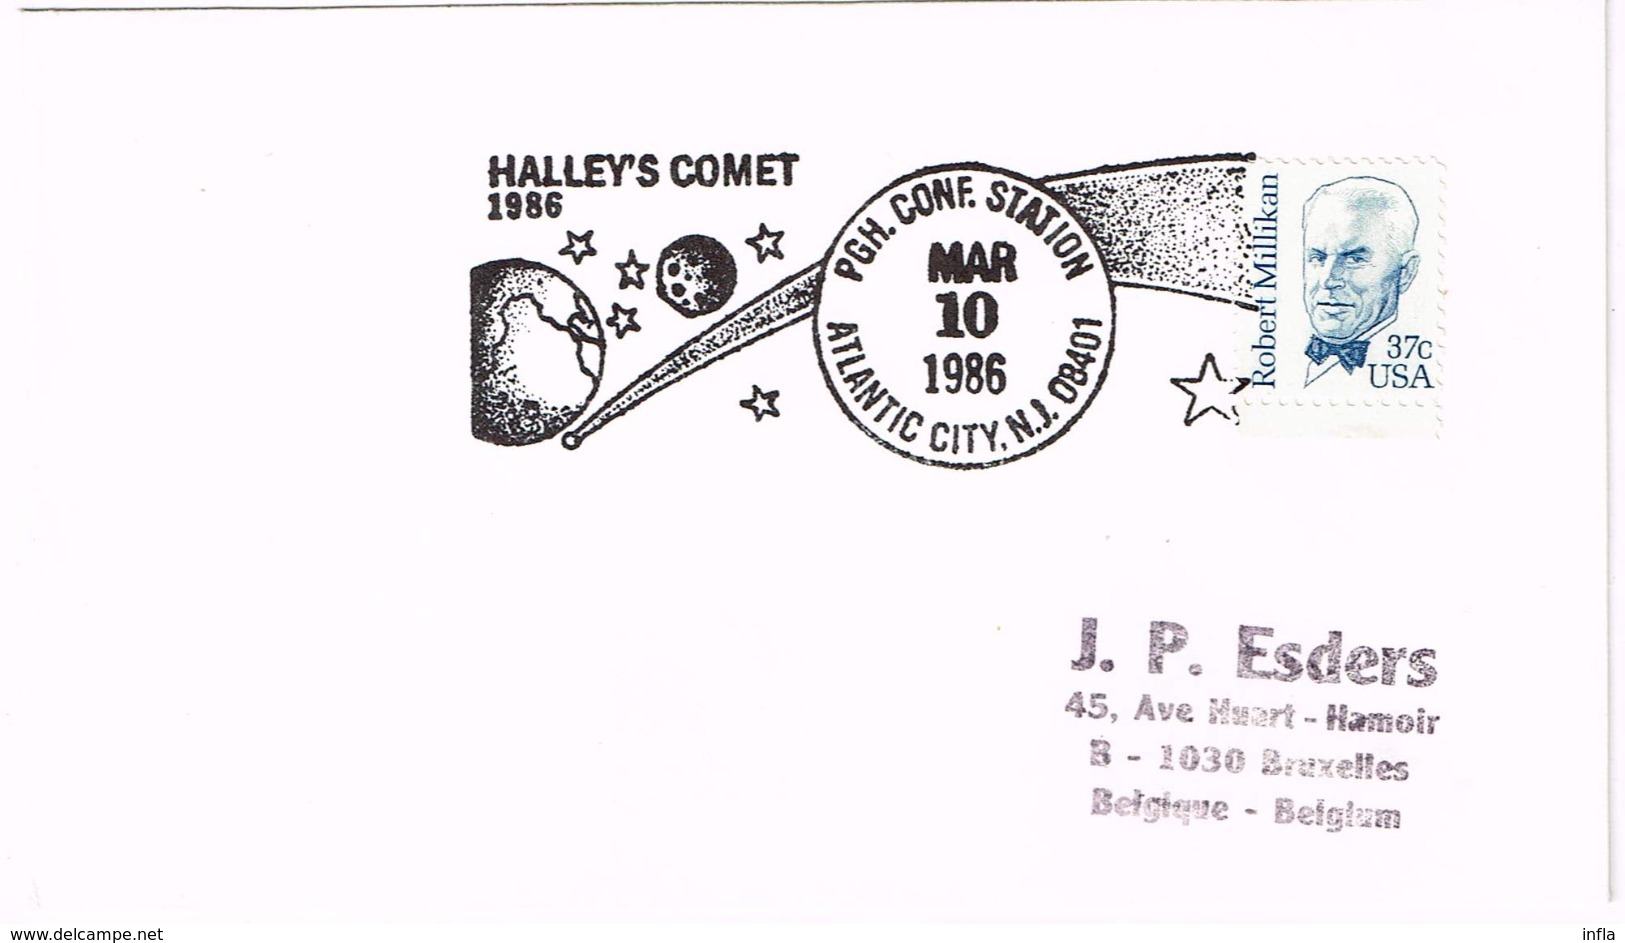 Sammlung zum Kometen Halley FDC, Ganzsachen, Sonderstempel .... 61 Artikel